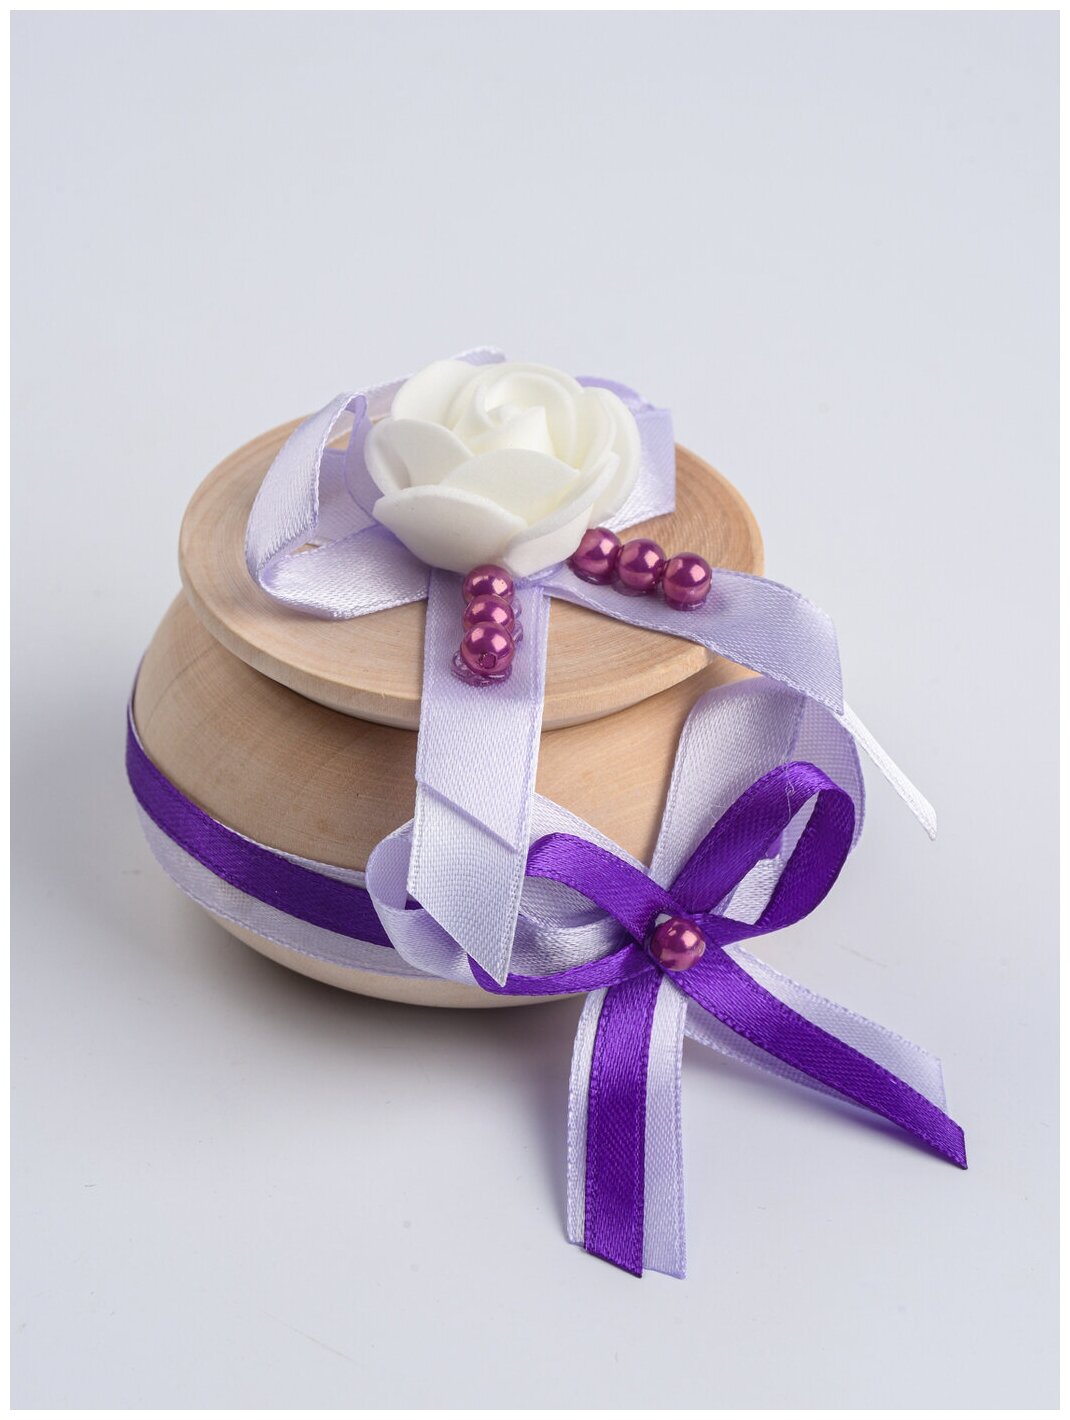 Маленькая свадебная солонка для встречи молодоженов караваем с атласным декором в фиолетовых тонах, жемчугом и белыми латексными розами